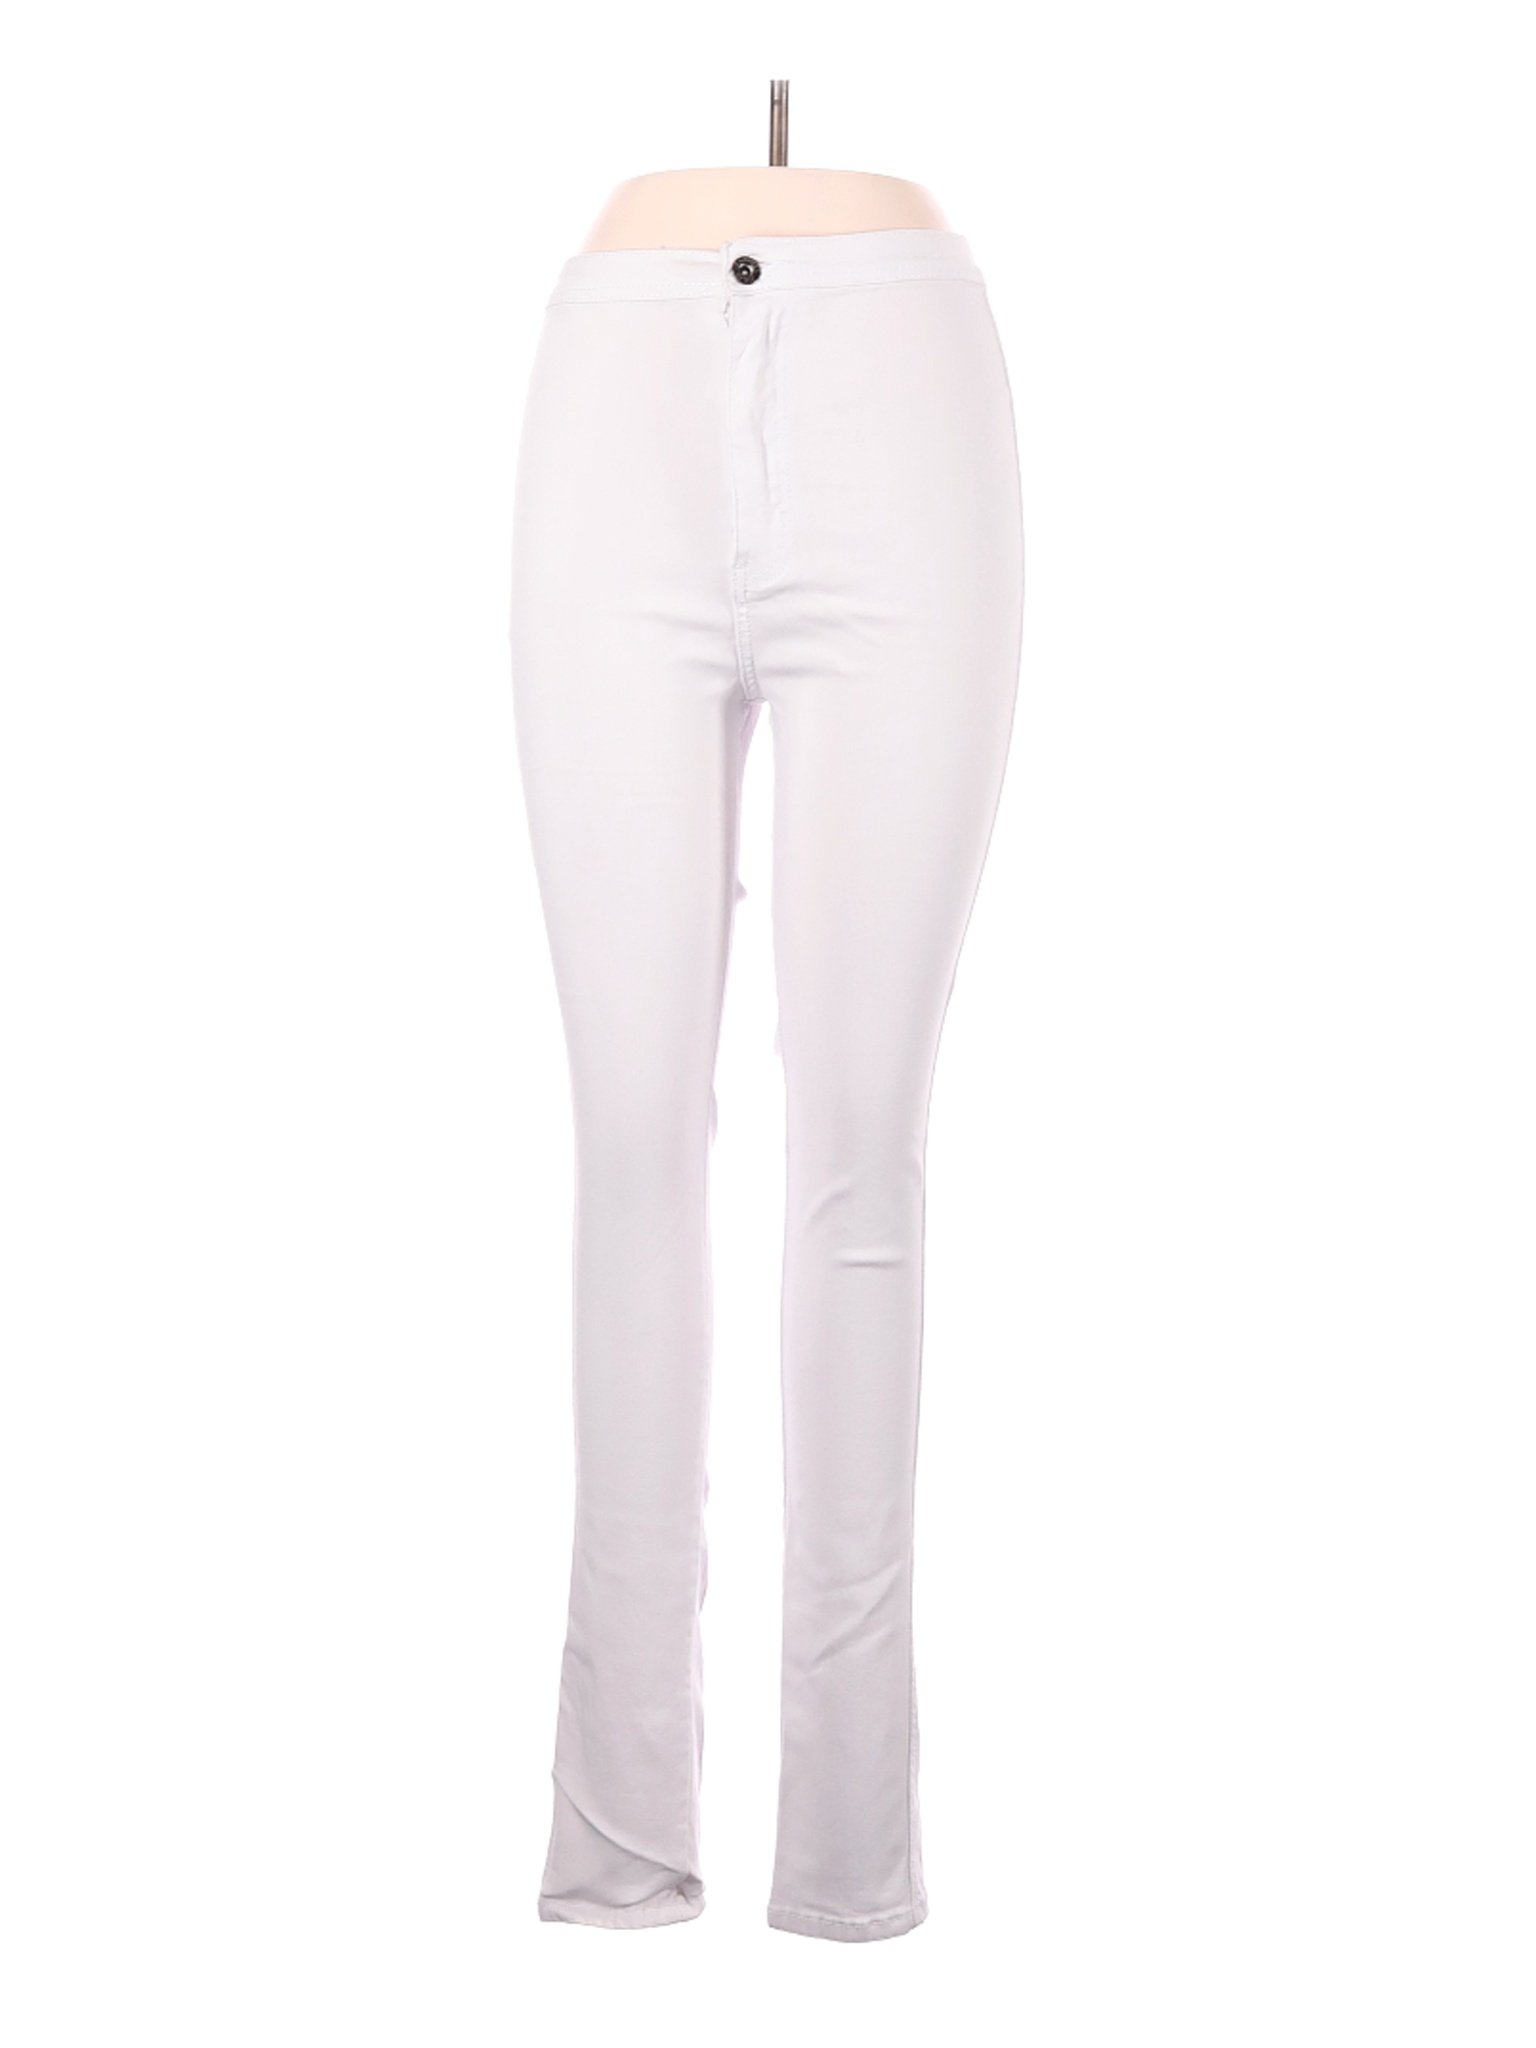 JC JQ Jeans Women White Jeans L | eBay